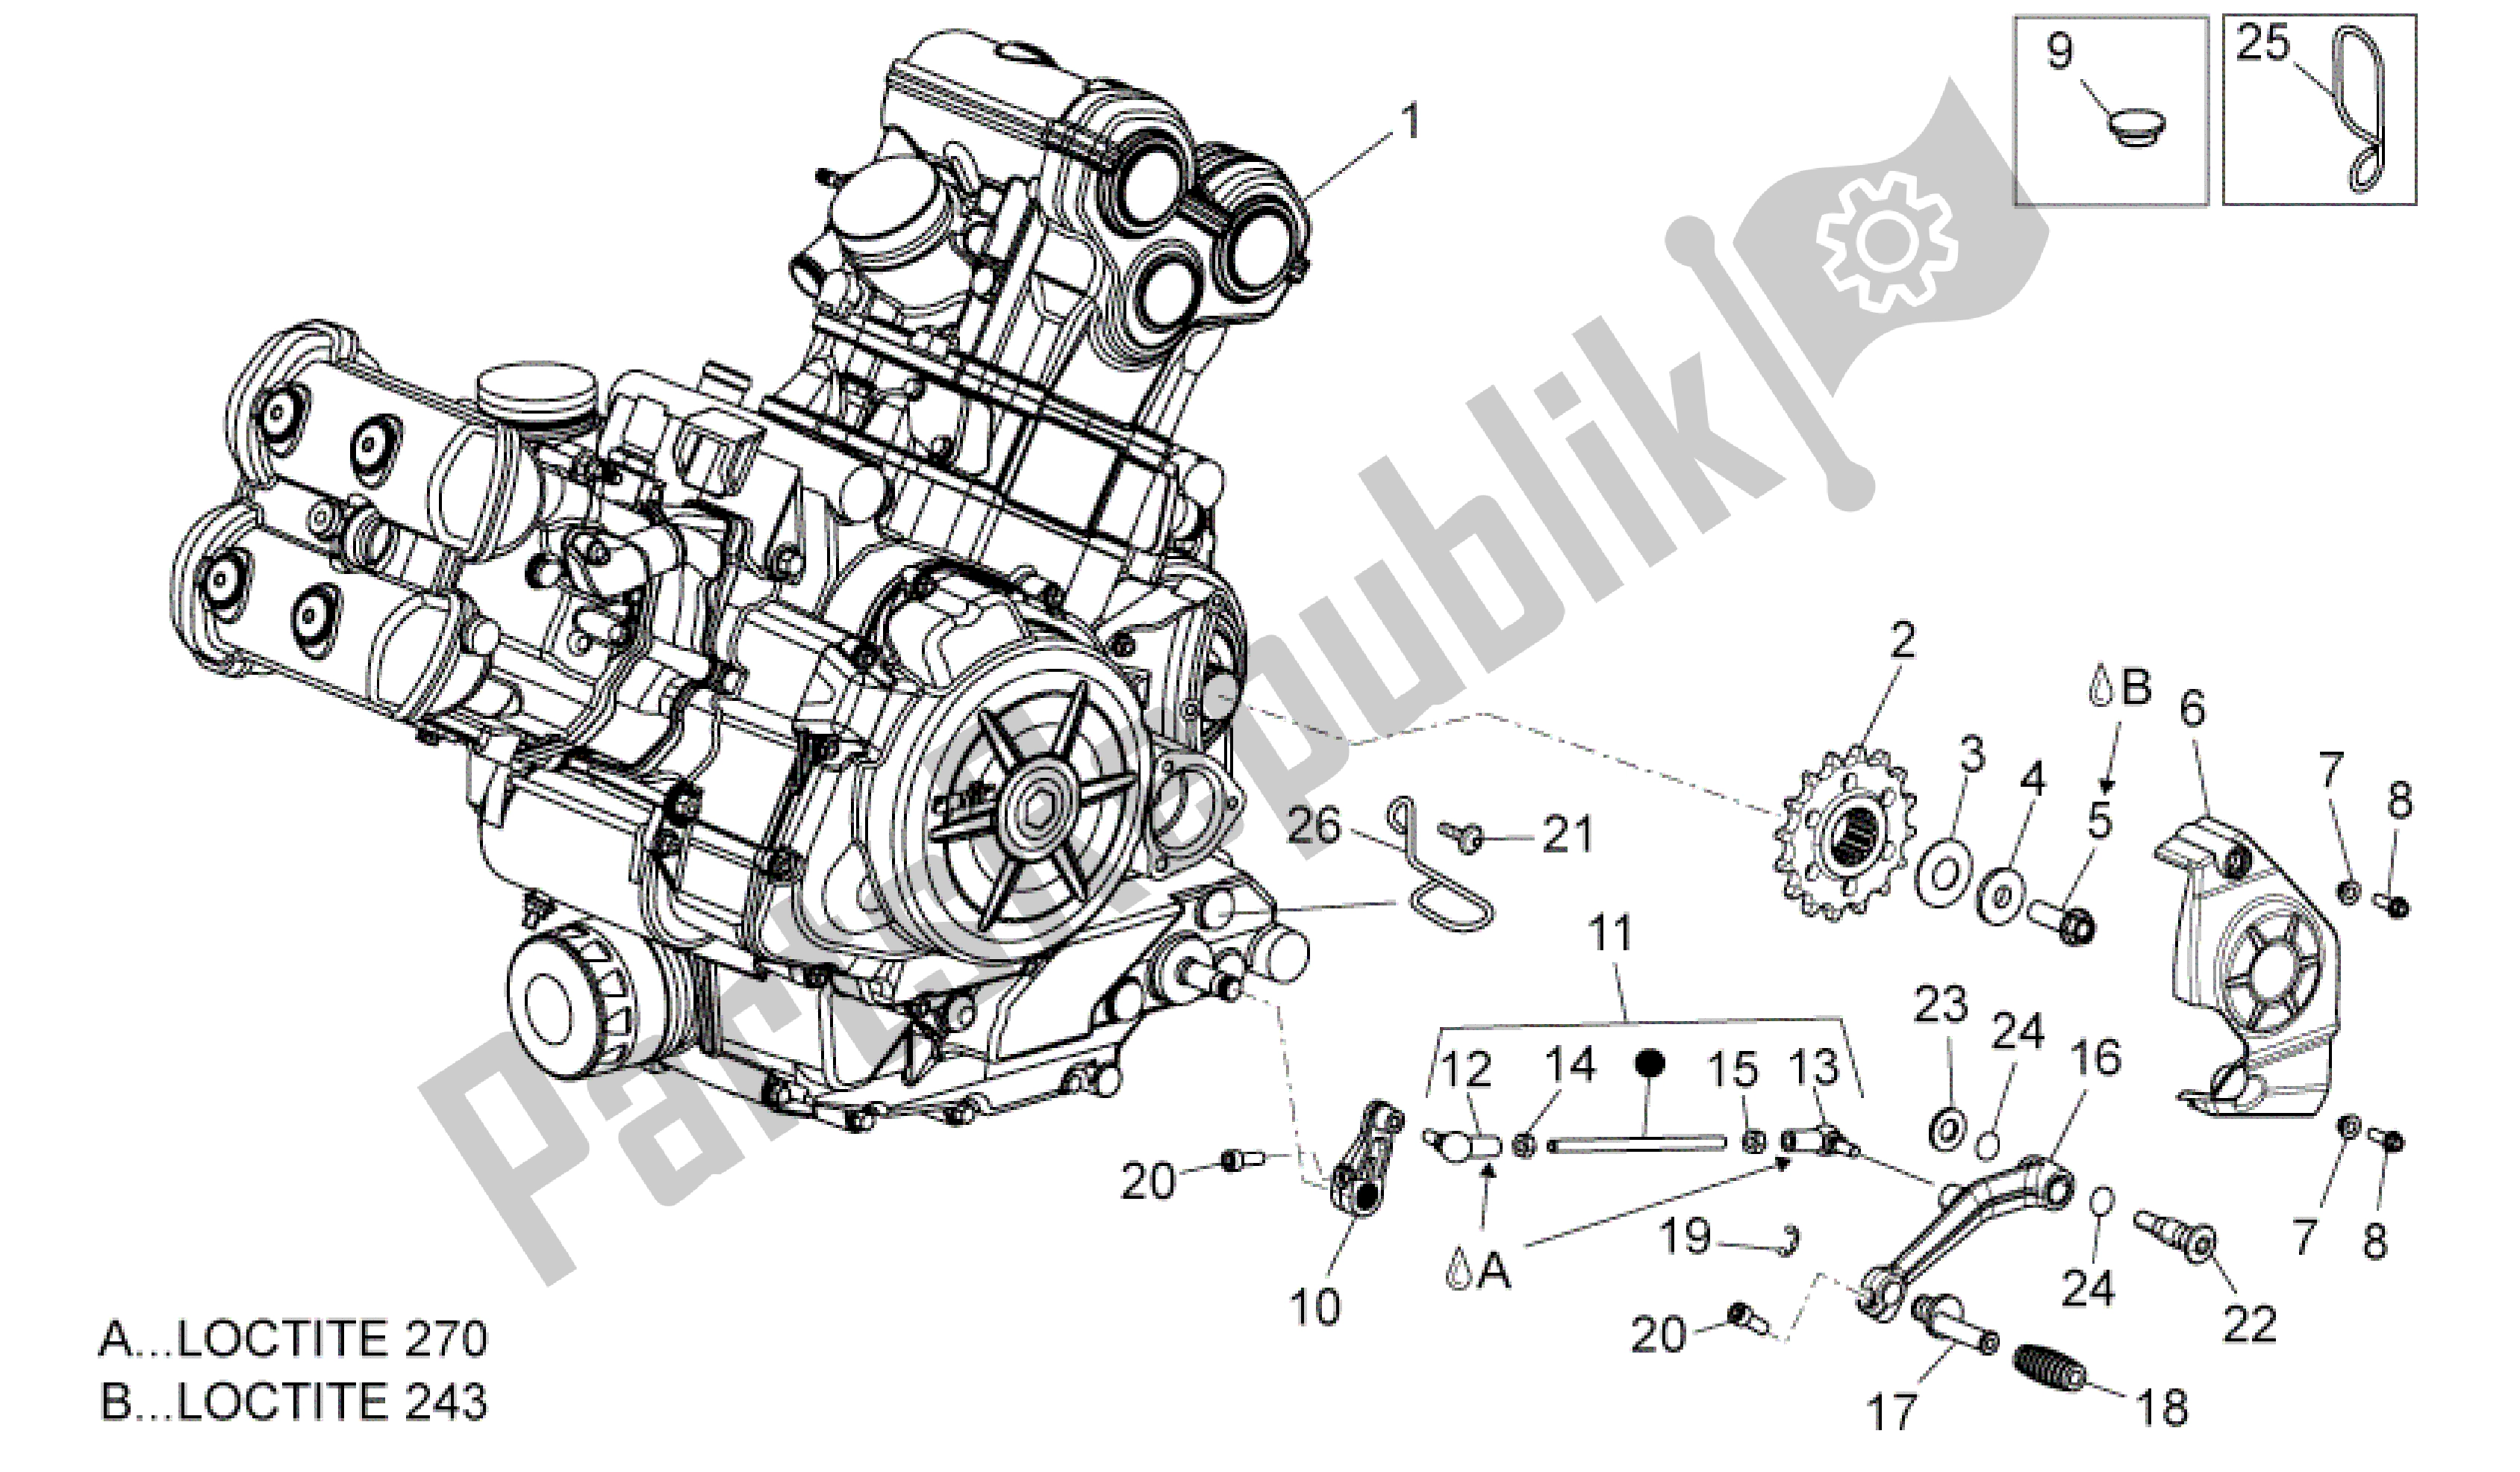 Alle onderdelen voor de Motor van de Aprilia Dorsoduro 1200 2010 - 2013